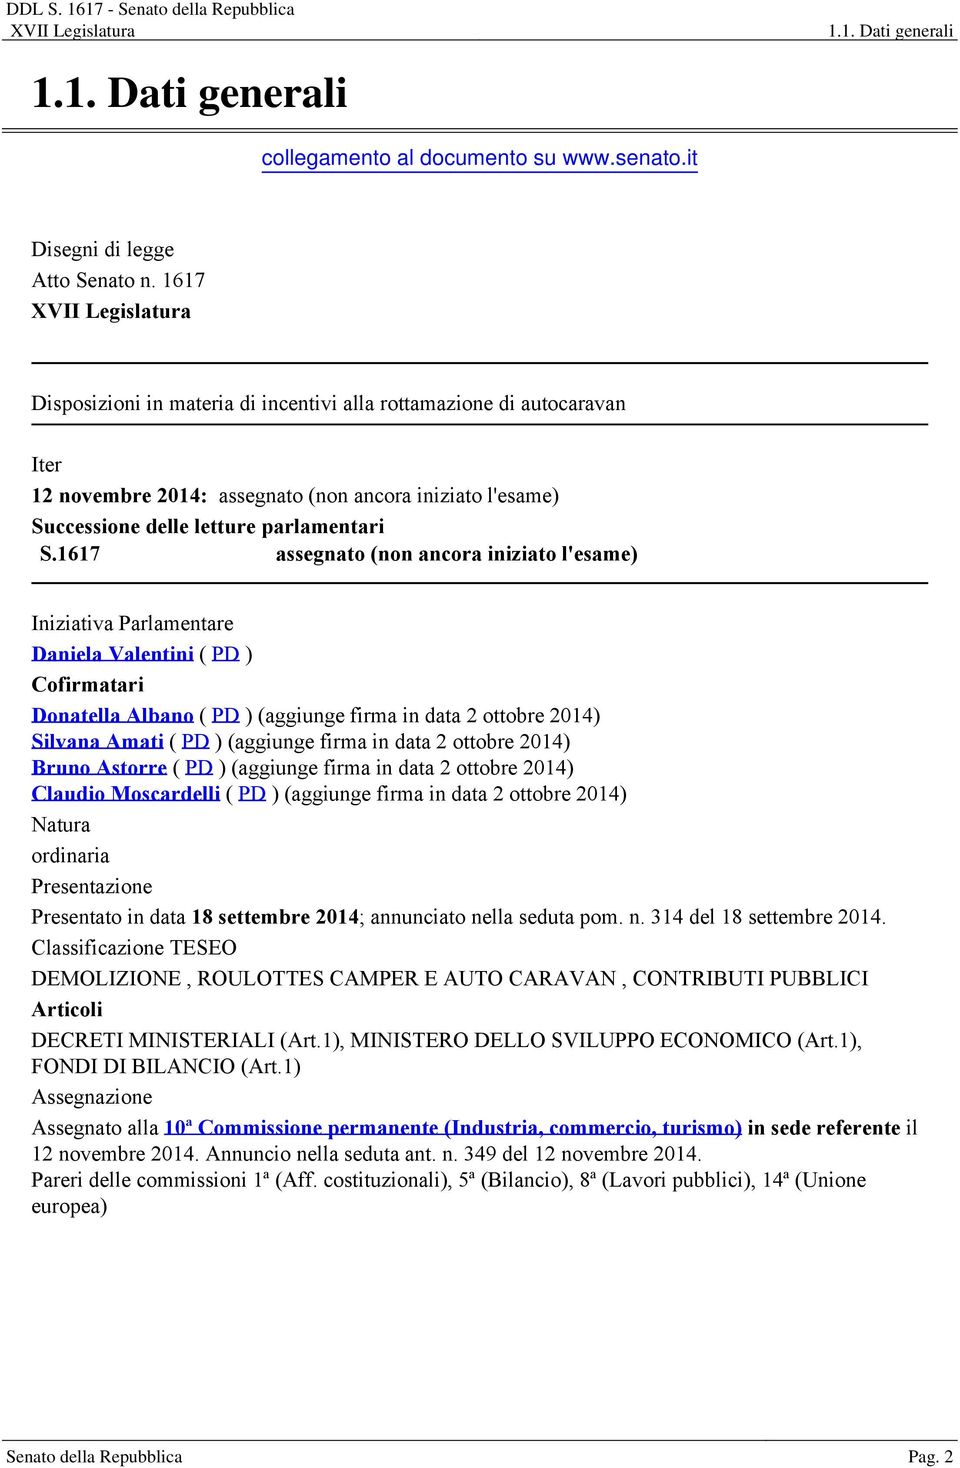 1617 assegnato (non ancora iniziato l'esame) Iniziativa Parlamentare Daniela Valentini ( PD ) Cofirmatari Donatella Albano ( PD ) (aggiunge firma in data 2 ottobre 2014) Silvana Amati ( PD )